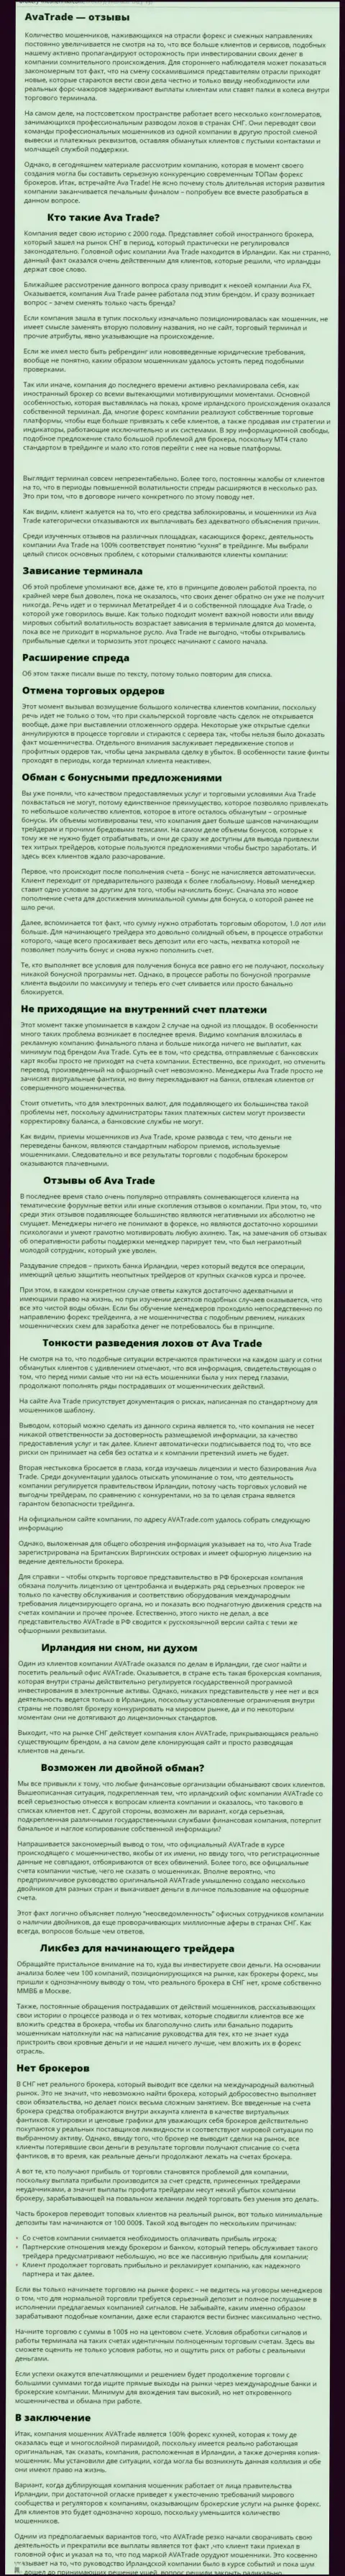 Обзорная публикация со стопроцентными доказательствами противозаконных уловок Ava Trade